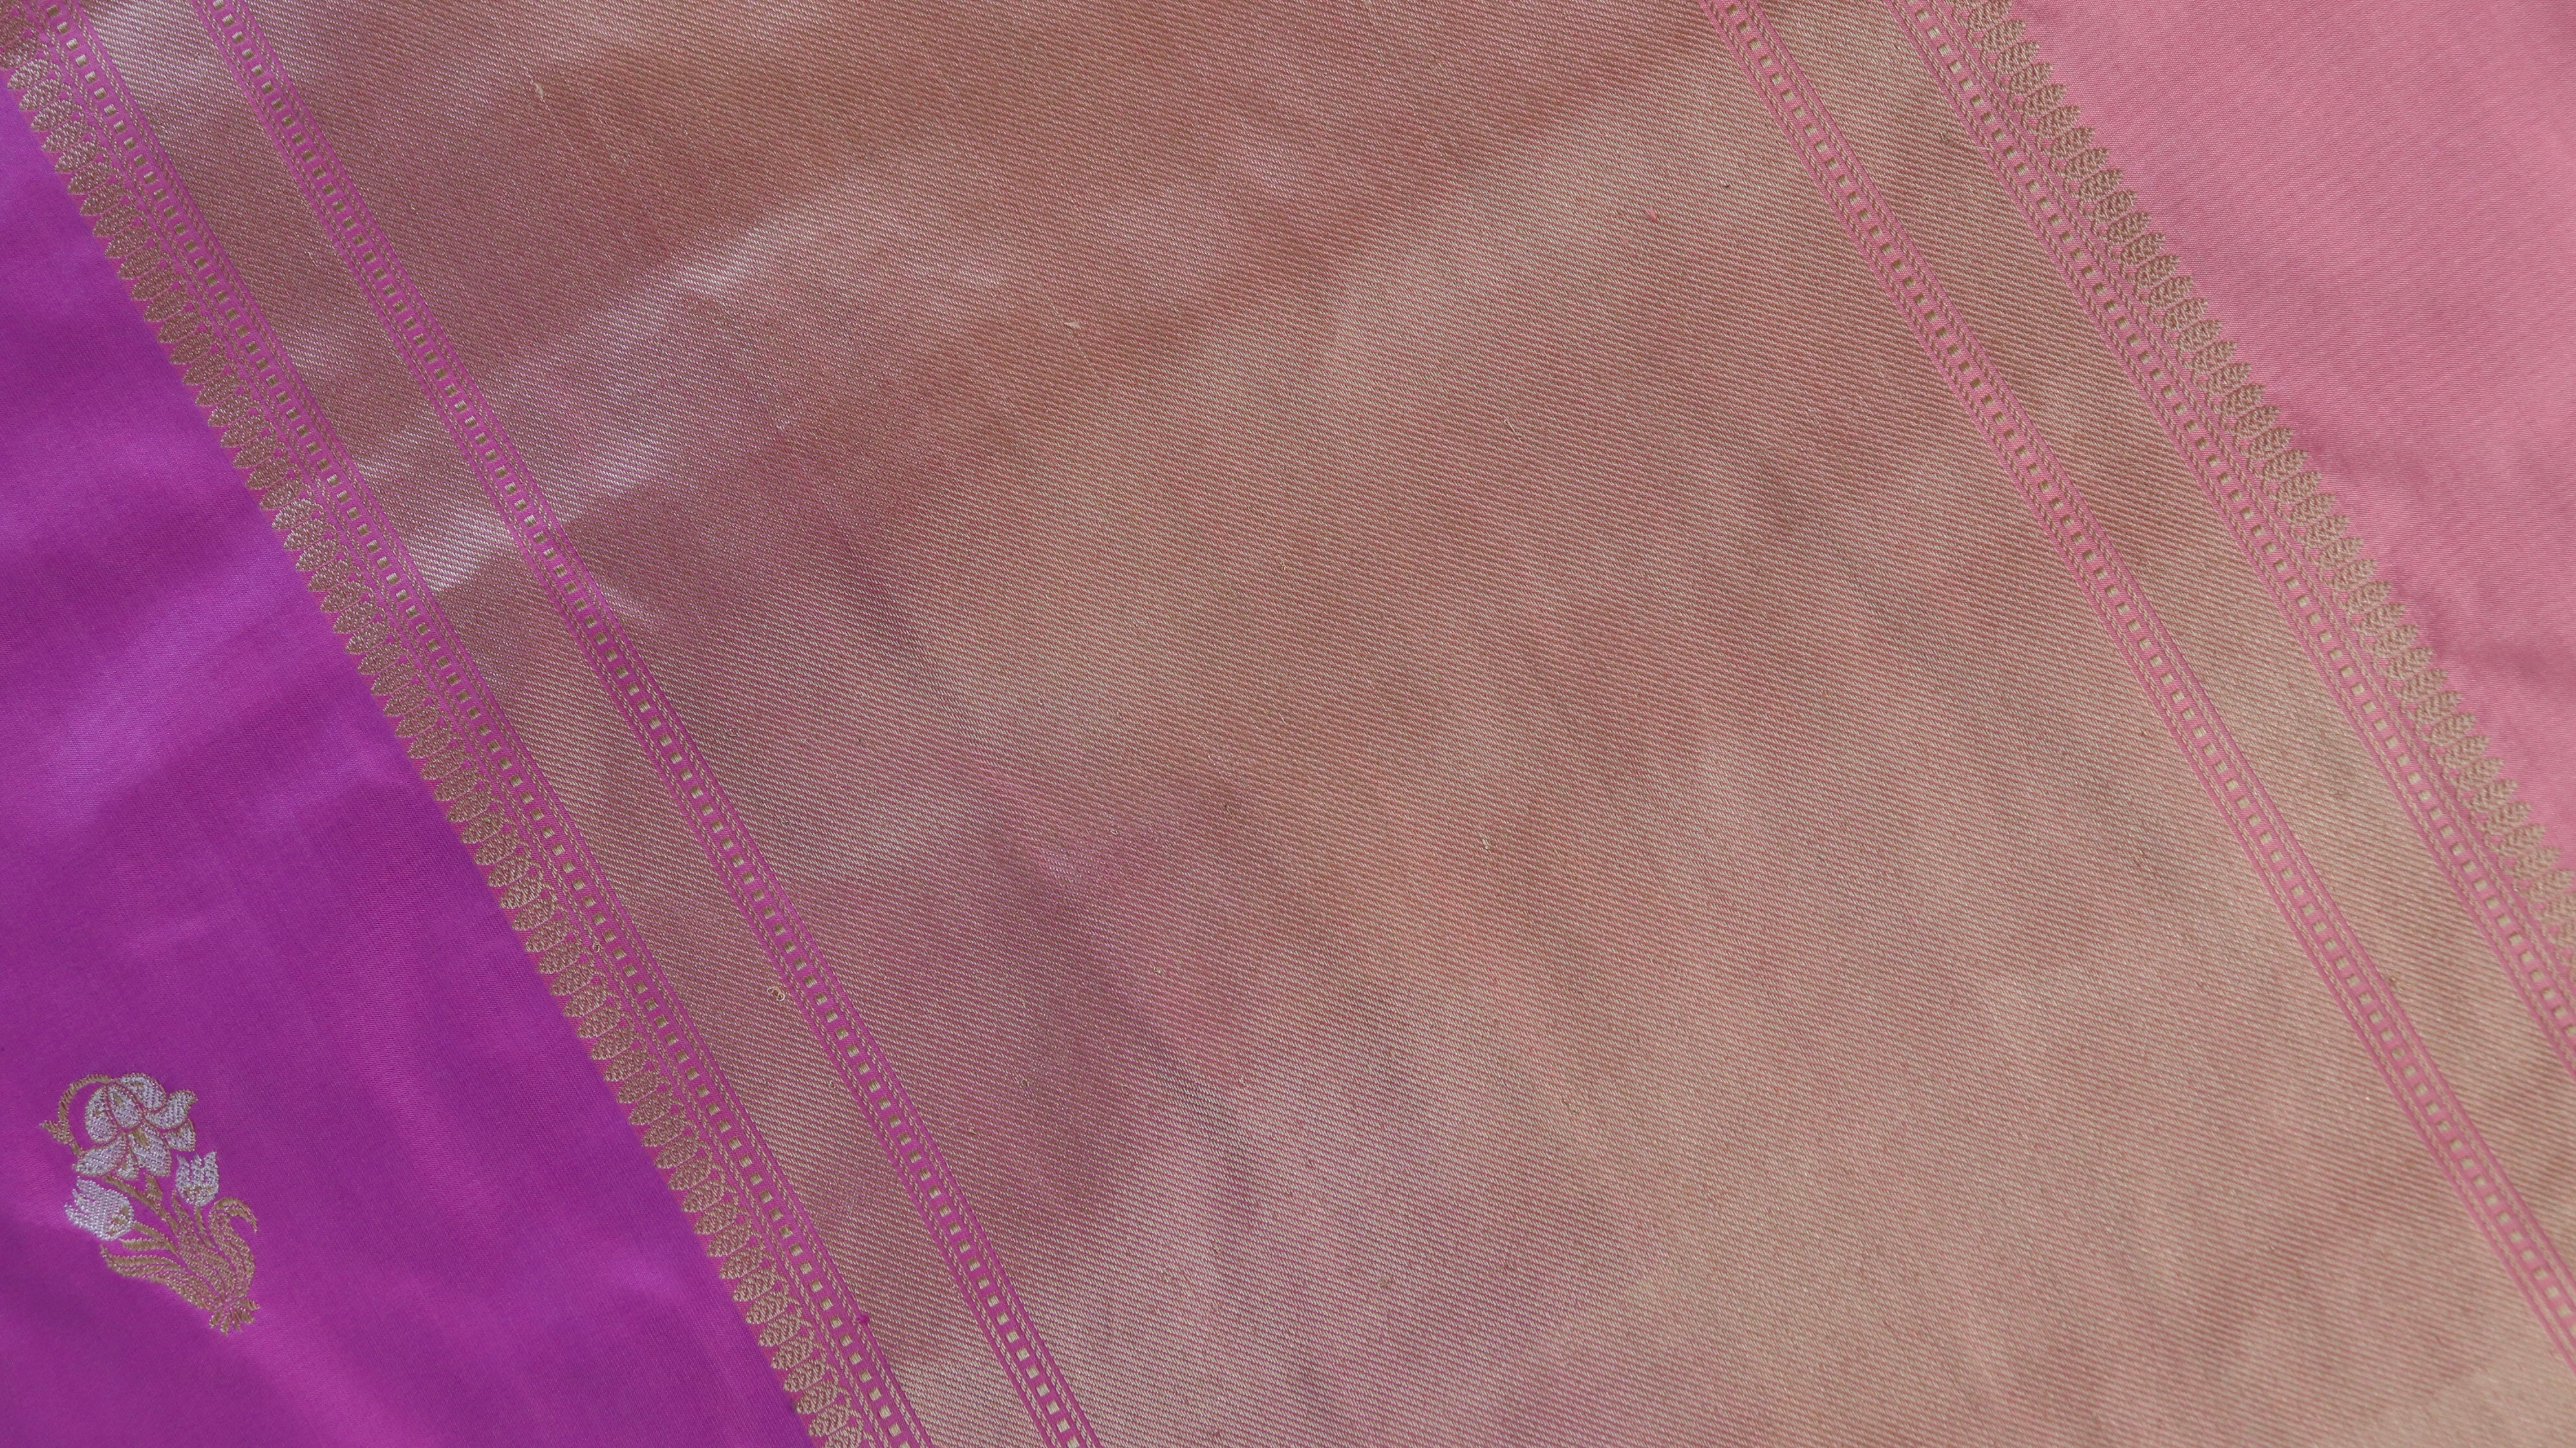 Handloom, Banarasi Handloom Saree, Alfi Saree, Tilfi Saree, Tilfi Saree Banaras, Tilfi, Banarasi Bunkar, Banarasi Bridal Wear, BridalWear, Banarasi Handloom Banarasi Pink Nargis Motif Pure Silk Handloom Banarasi Saree Banarasi Saree